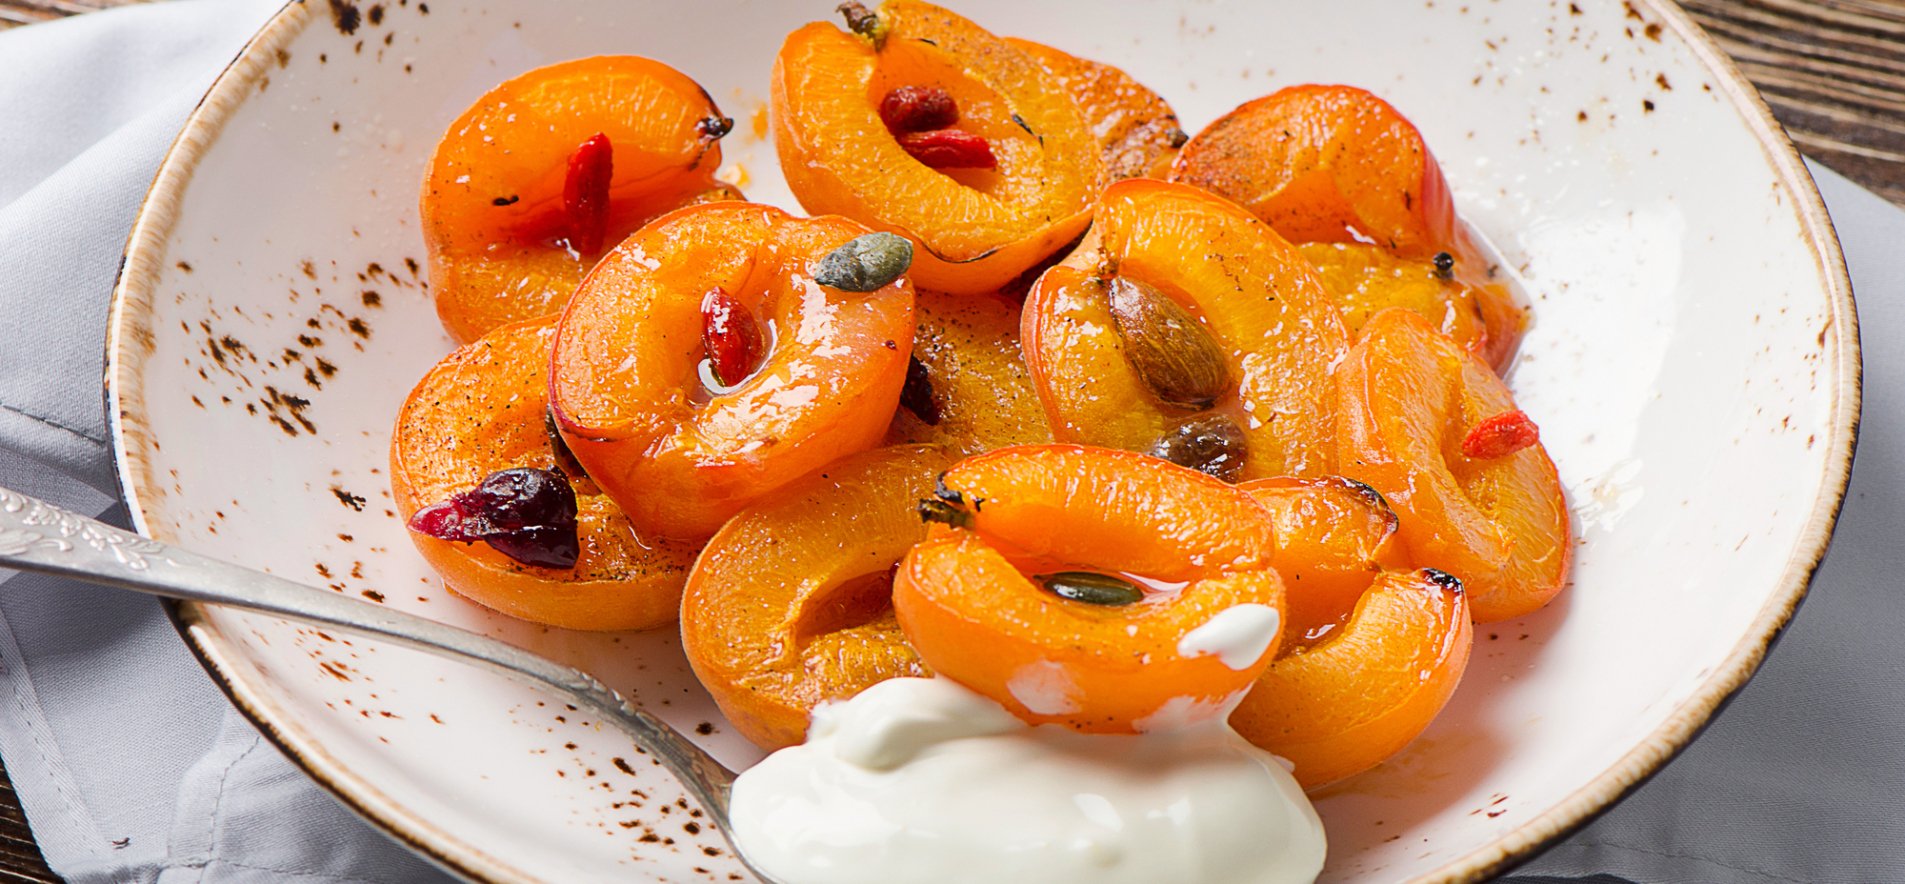 Что приготовить из абрикосов? Рецепты простых и оригинальных блюд